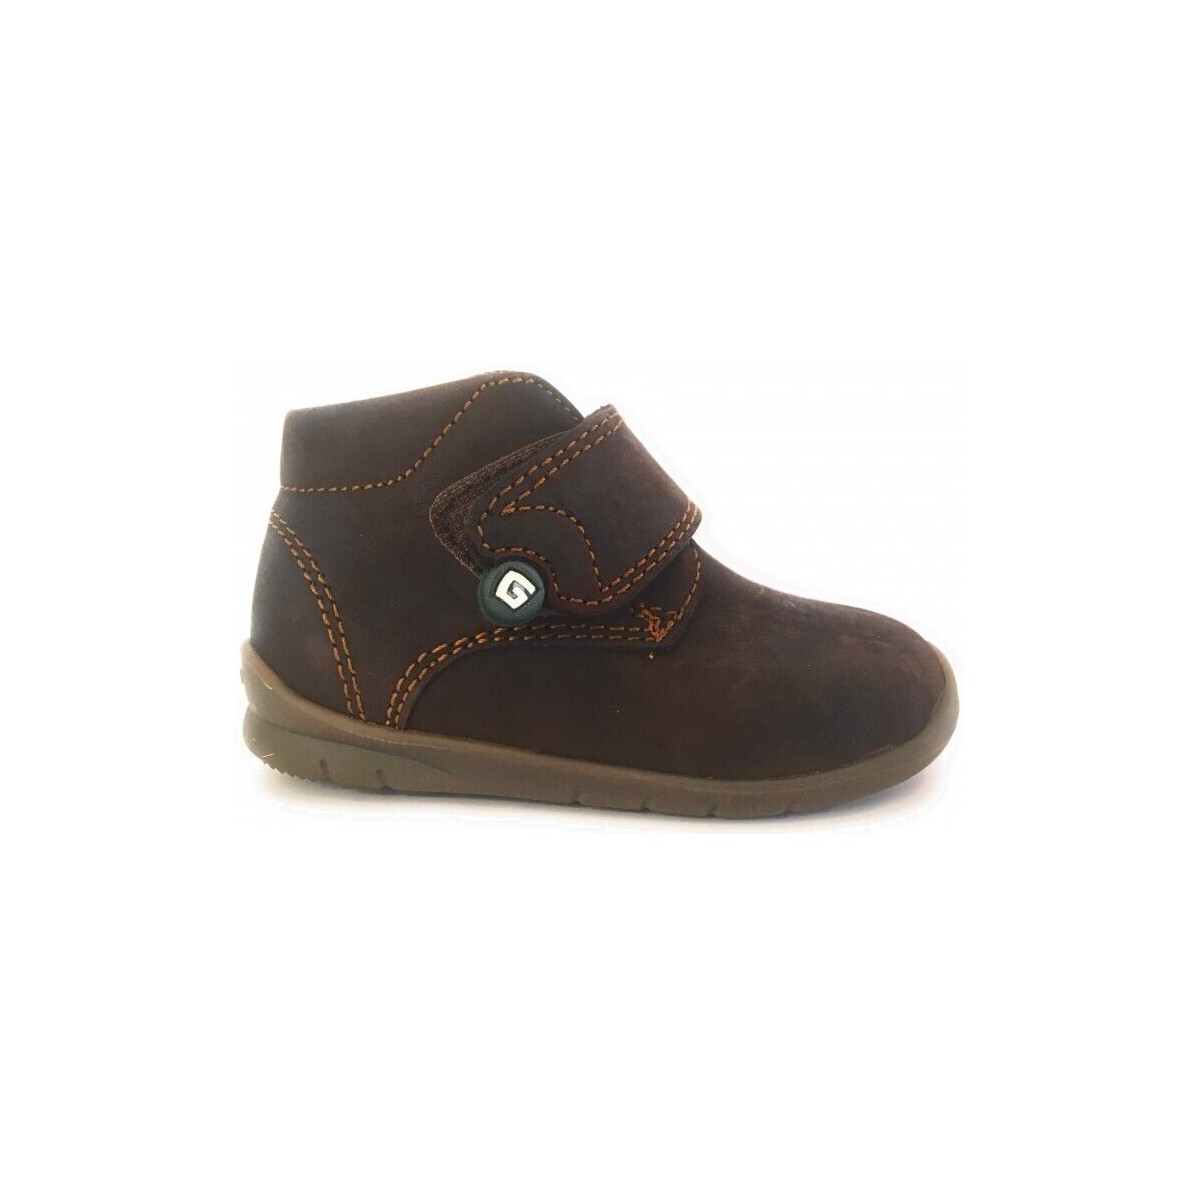 Παπούτσια Μπότες Gorila 23991-18 Brown